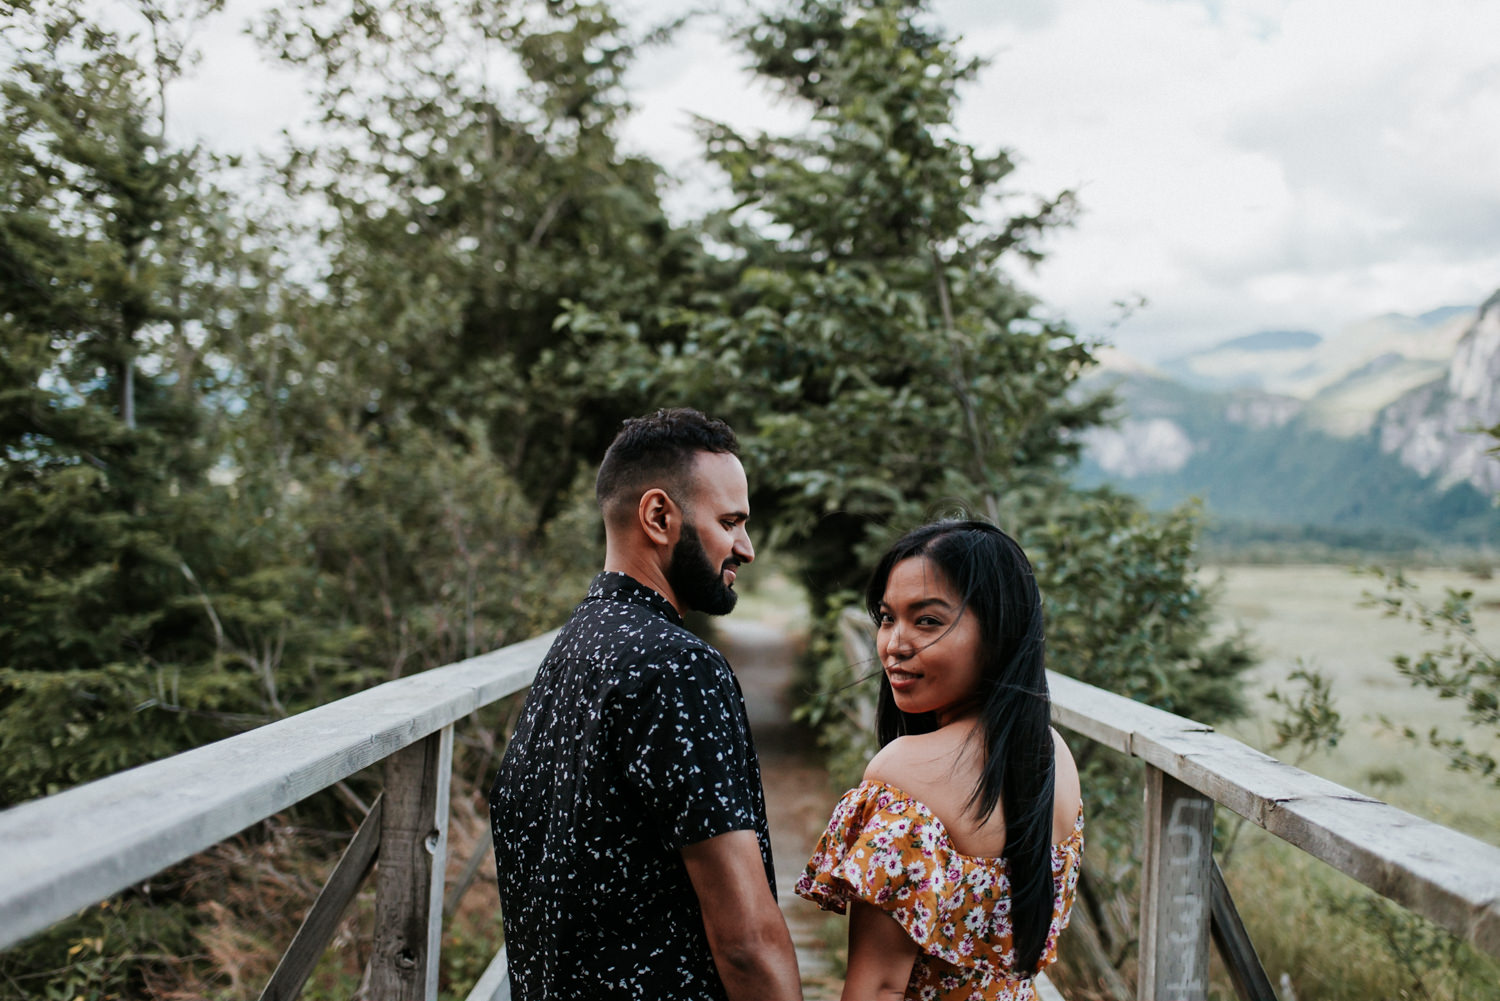 Squamish engagement photography, Squamish elopement locations, Squamish wedding venues, Squamish Wedding Photography, Squamish Elopement Photography